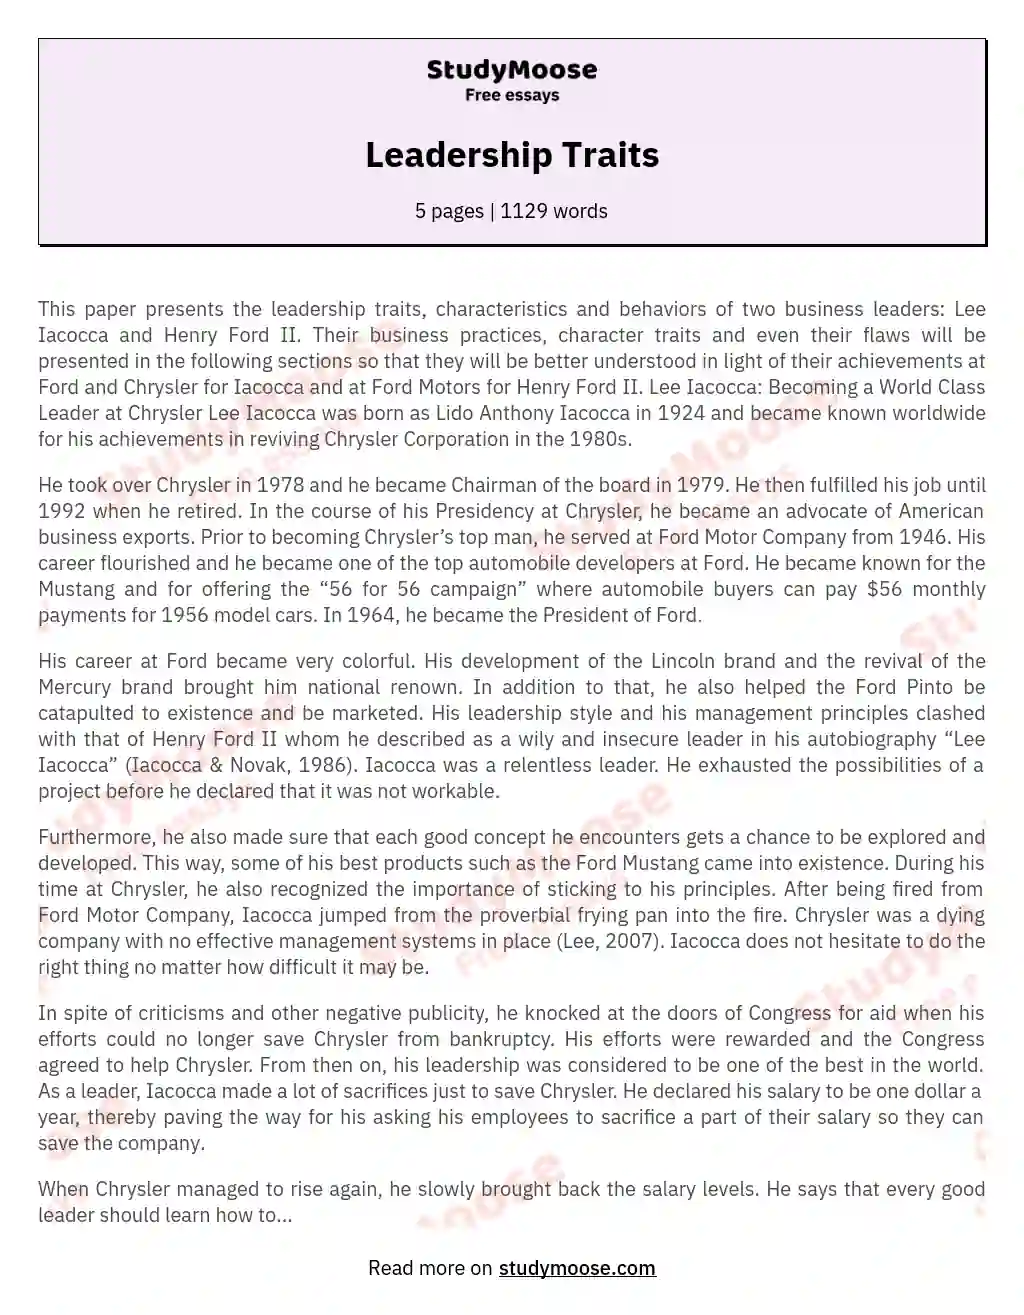 Leadership Traits essay